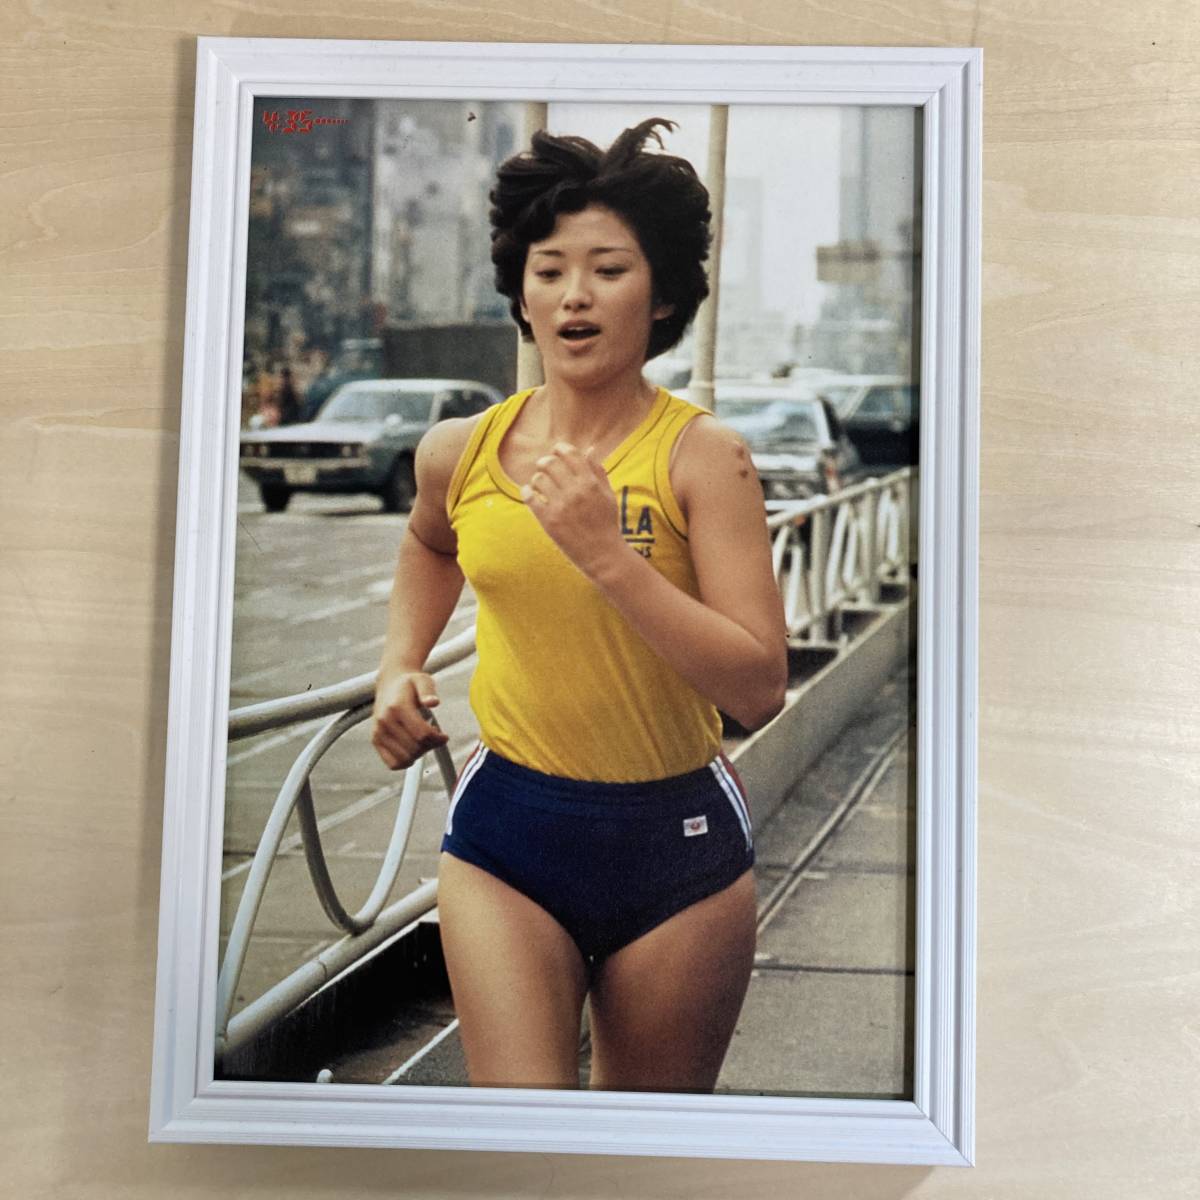 * рамка товар Yamaguchi Momoe бег ценный фотография A4 размер сумма ввод постер способ искусство рама бесплатная доставка D57